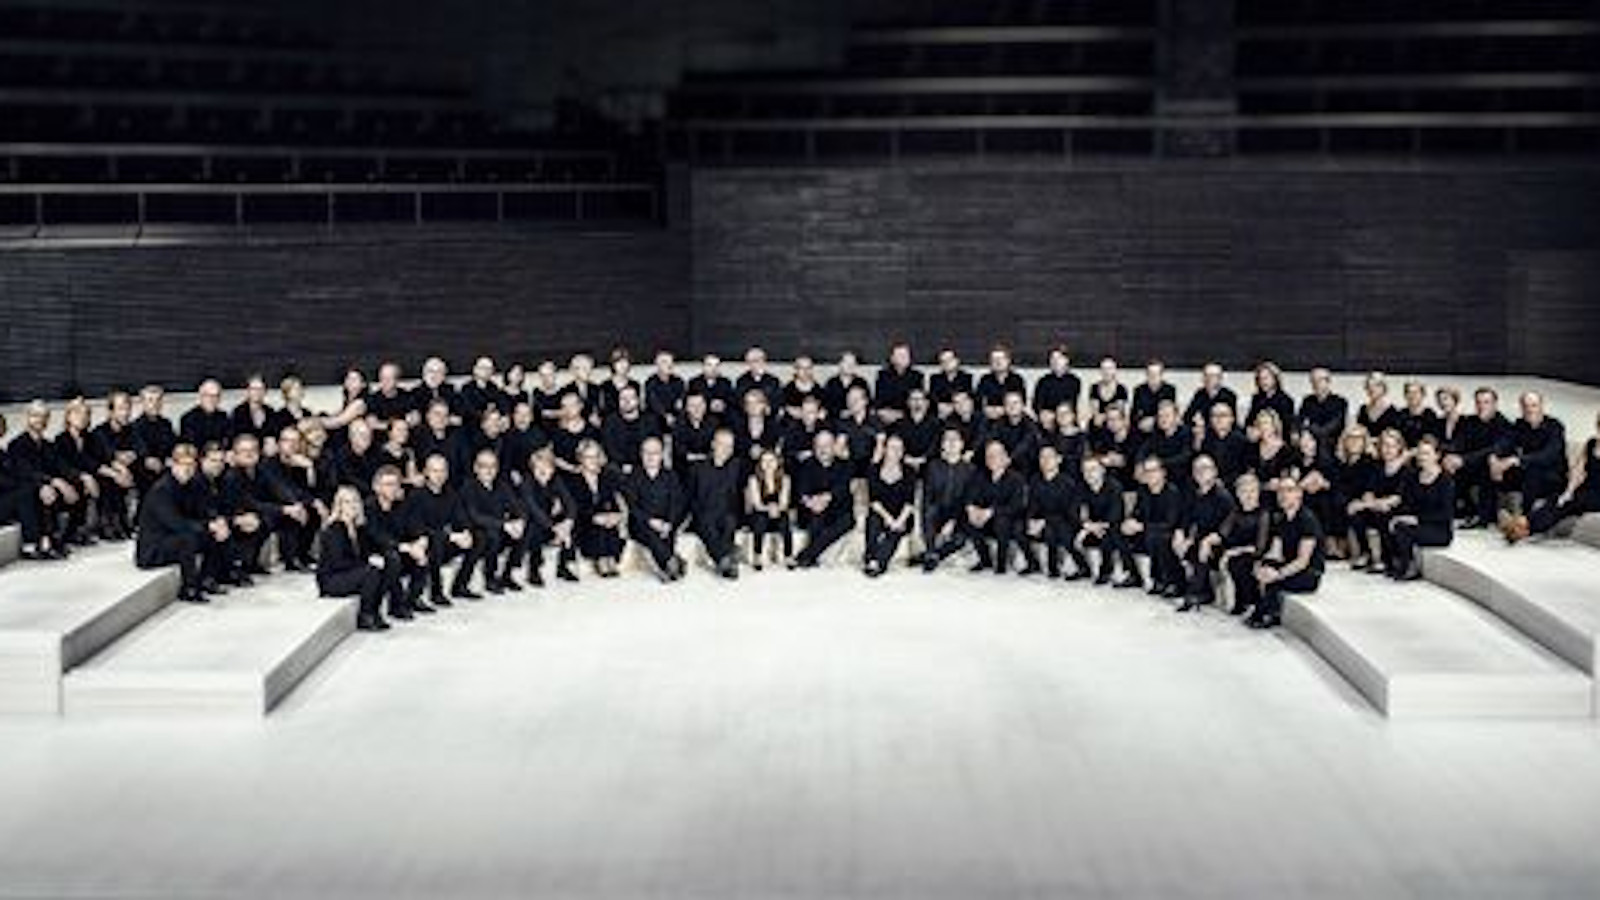 Kuvassa on RSO:n orkesteri istumassa orkesterikorokkeella. Orkesterin jäsenillä on musta-valkoiset tai mustat vaatteet. 